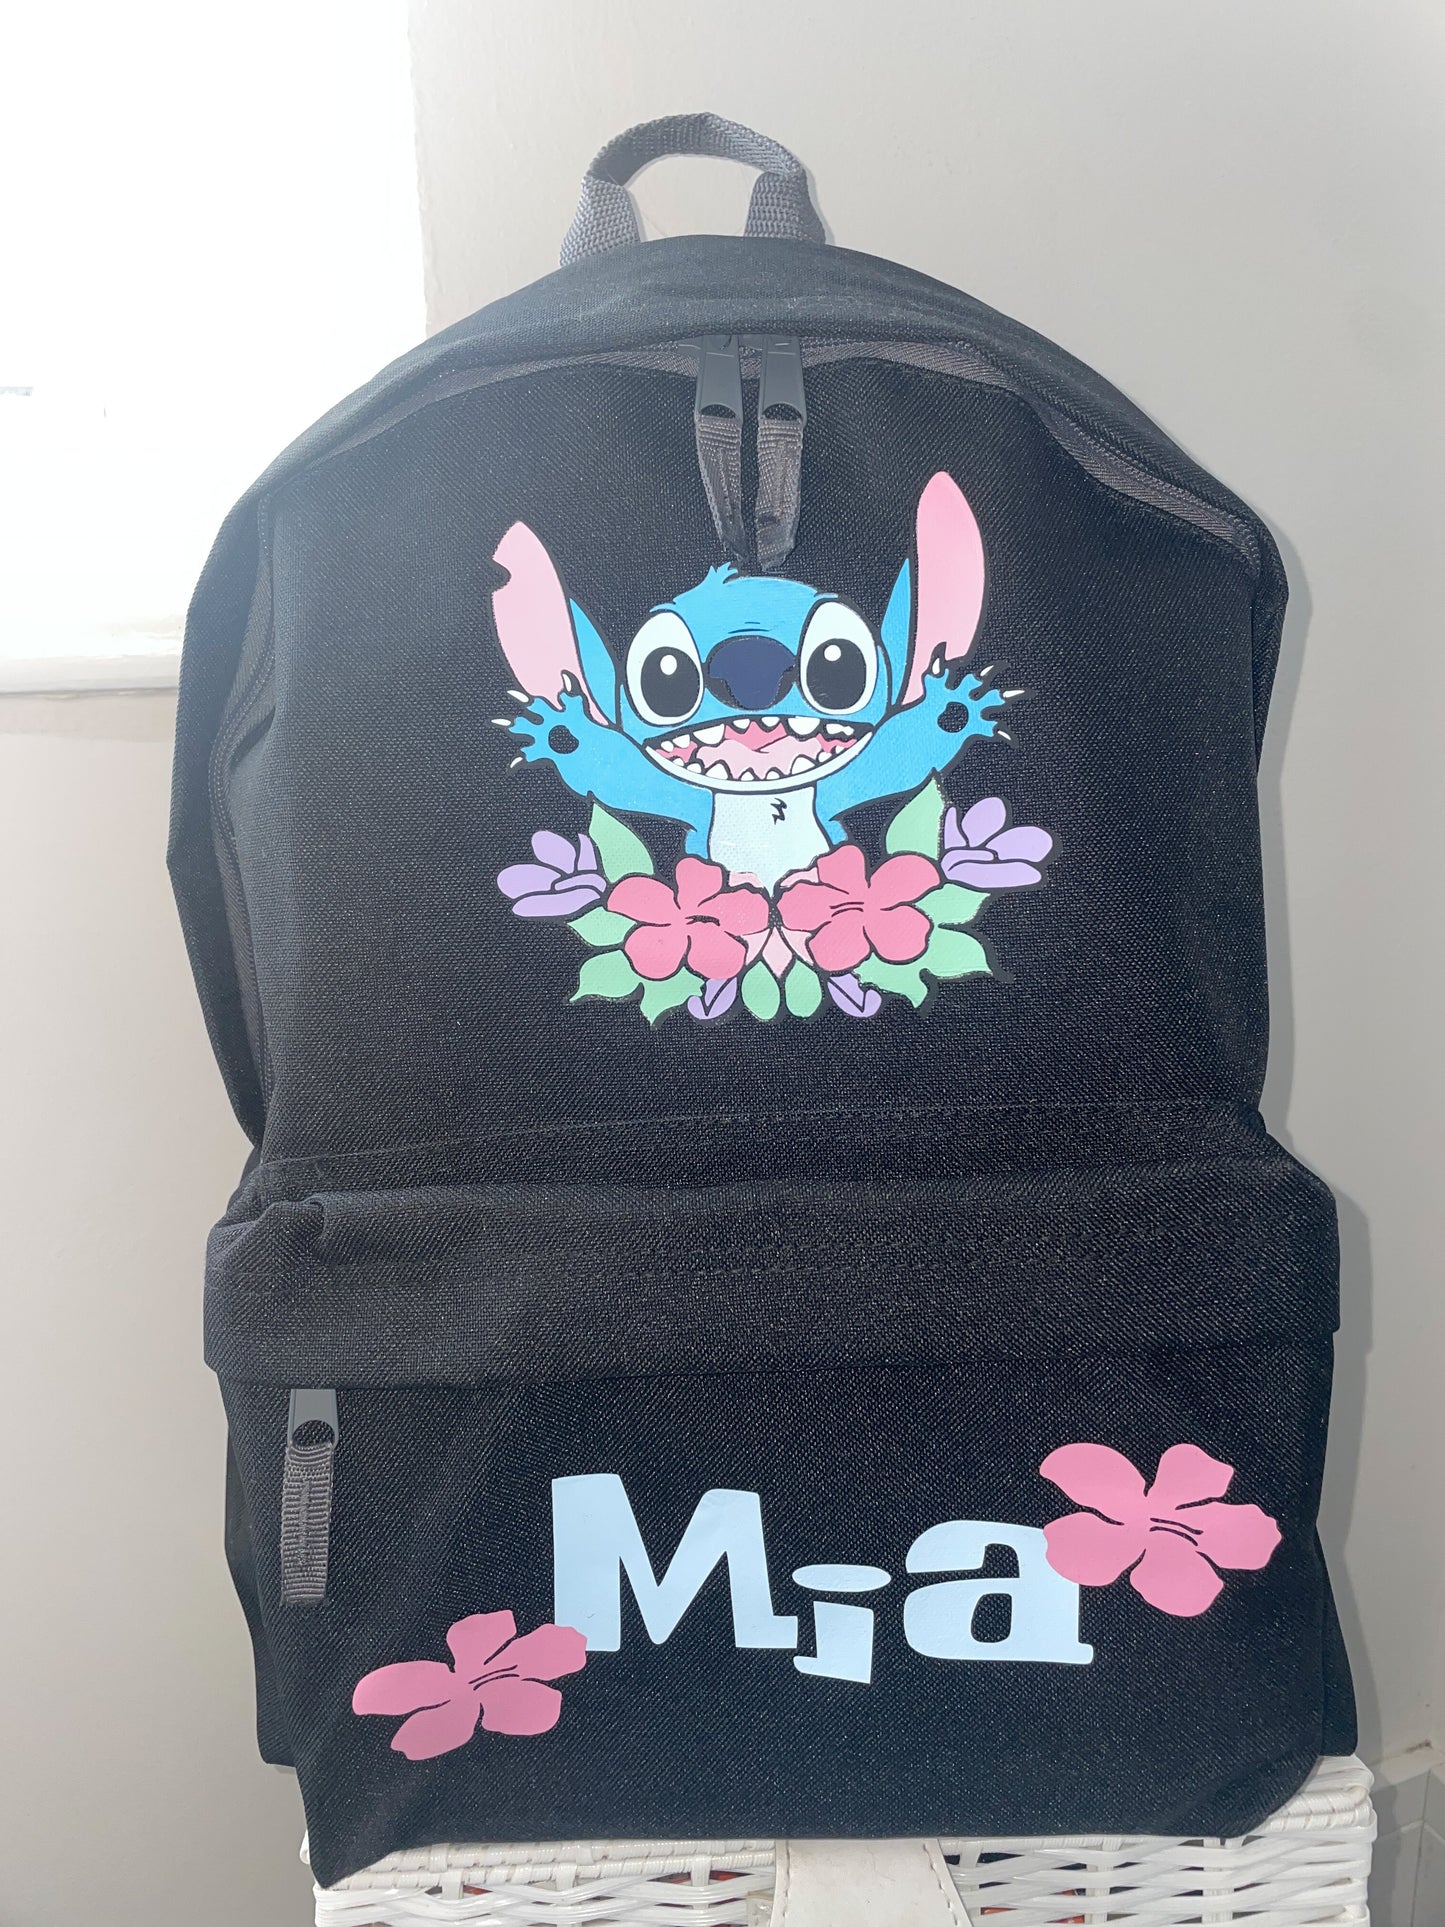 Personalised Character Medium Backpack 12 Litre - Rucksack - School Bag, Weekend Bag, Nursey Bag, Children's Bag - Back To School